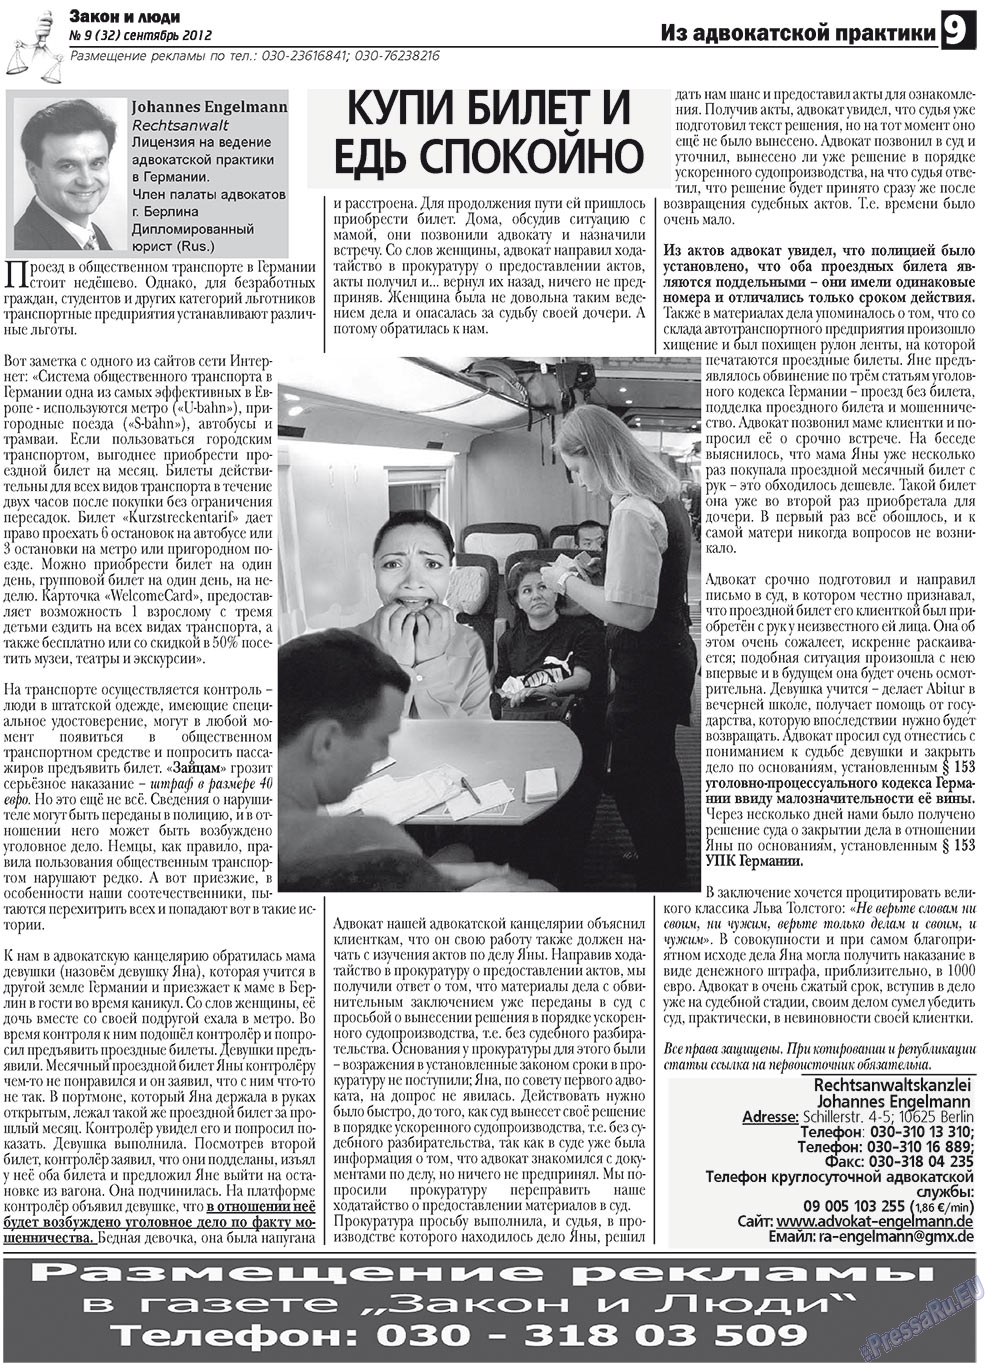 Закон и люди, газета. 2012 №9 стр.9